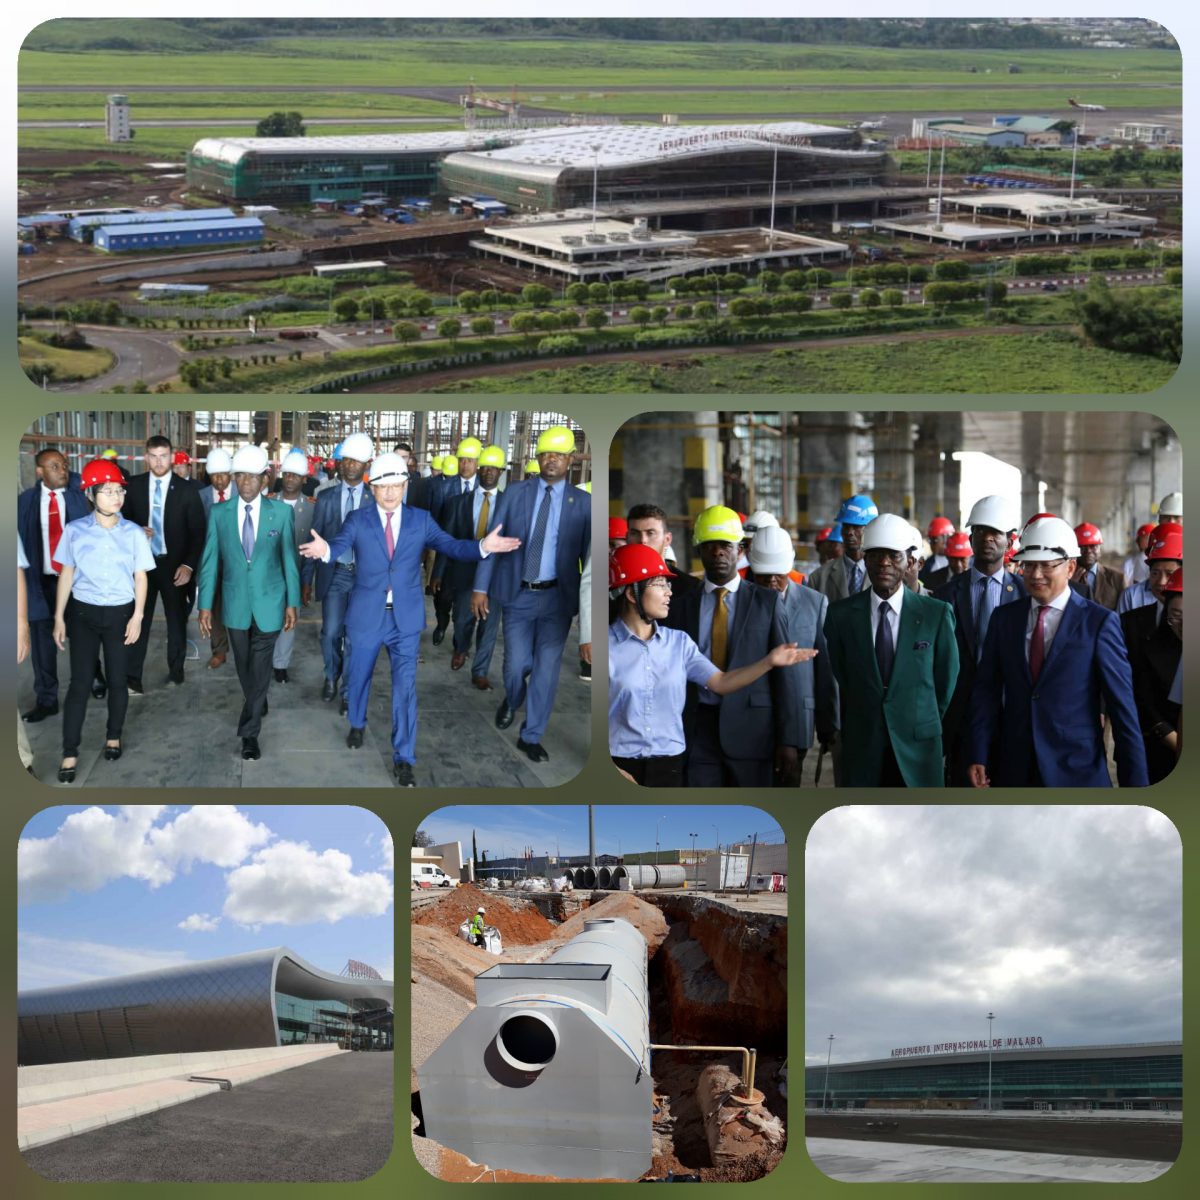 Ampliando Referencias Internaciones Separadores de Hidrocarburos – Nuevo Aeropuerto Internacional de Malabo (Guinea Ecuatorial)